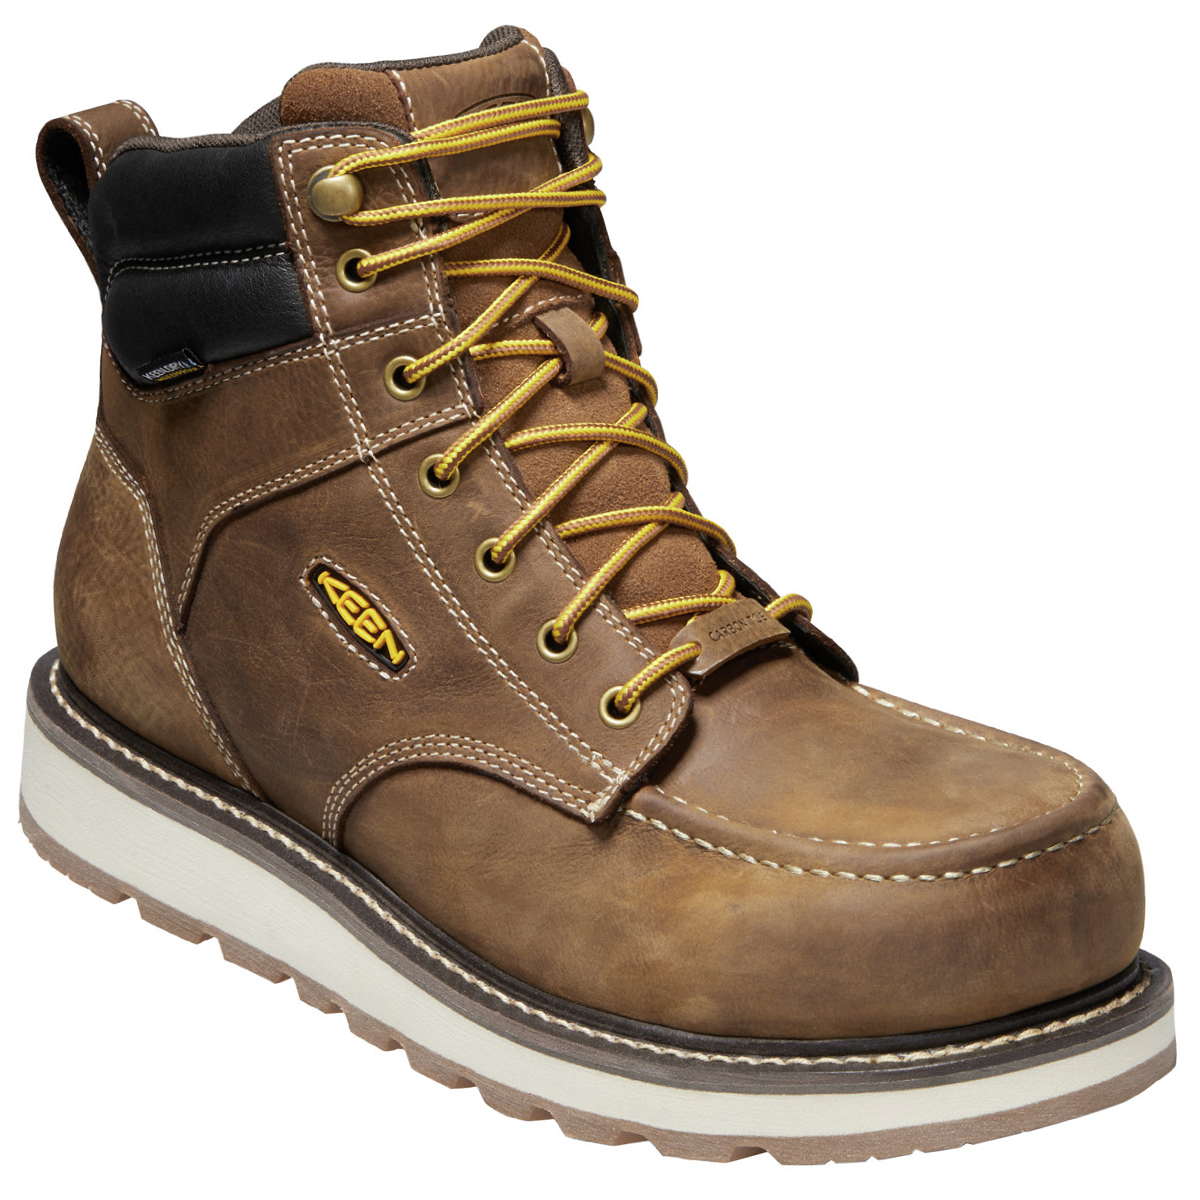 Keen Men's Cincinnati 6" Waterproof Boots (Carbon-Fiber Toe)